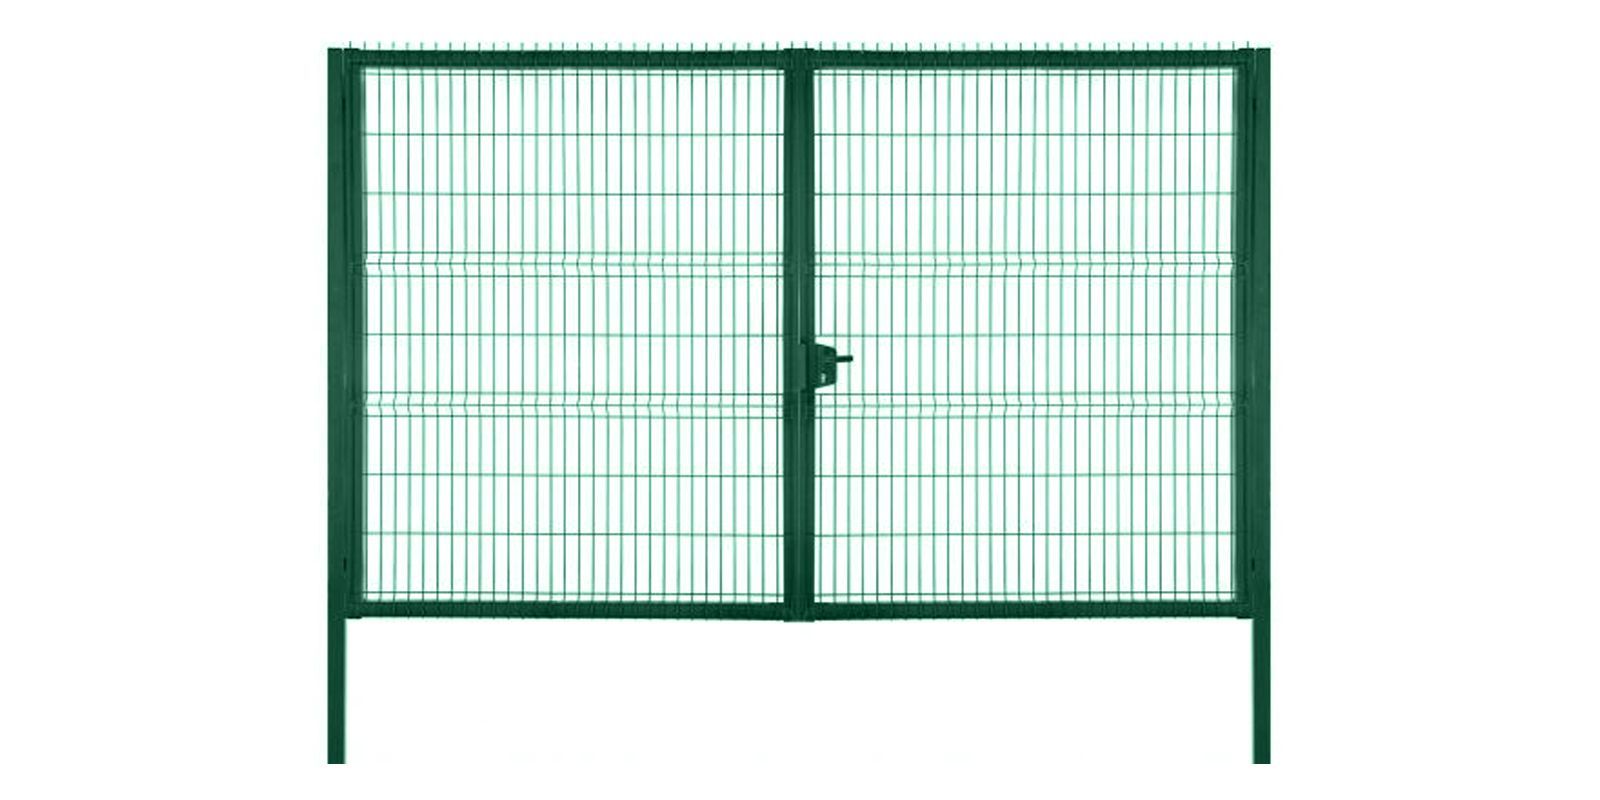 Купить Ворота для панельного ограждения Profi шириной 3,00 м с высотой сетки 2,43 м в цвете RAL 6005